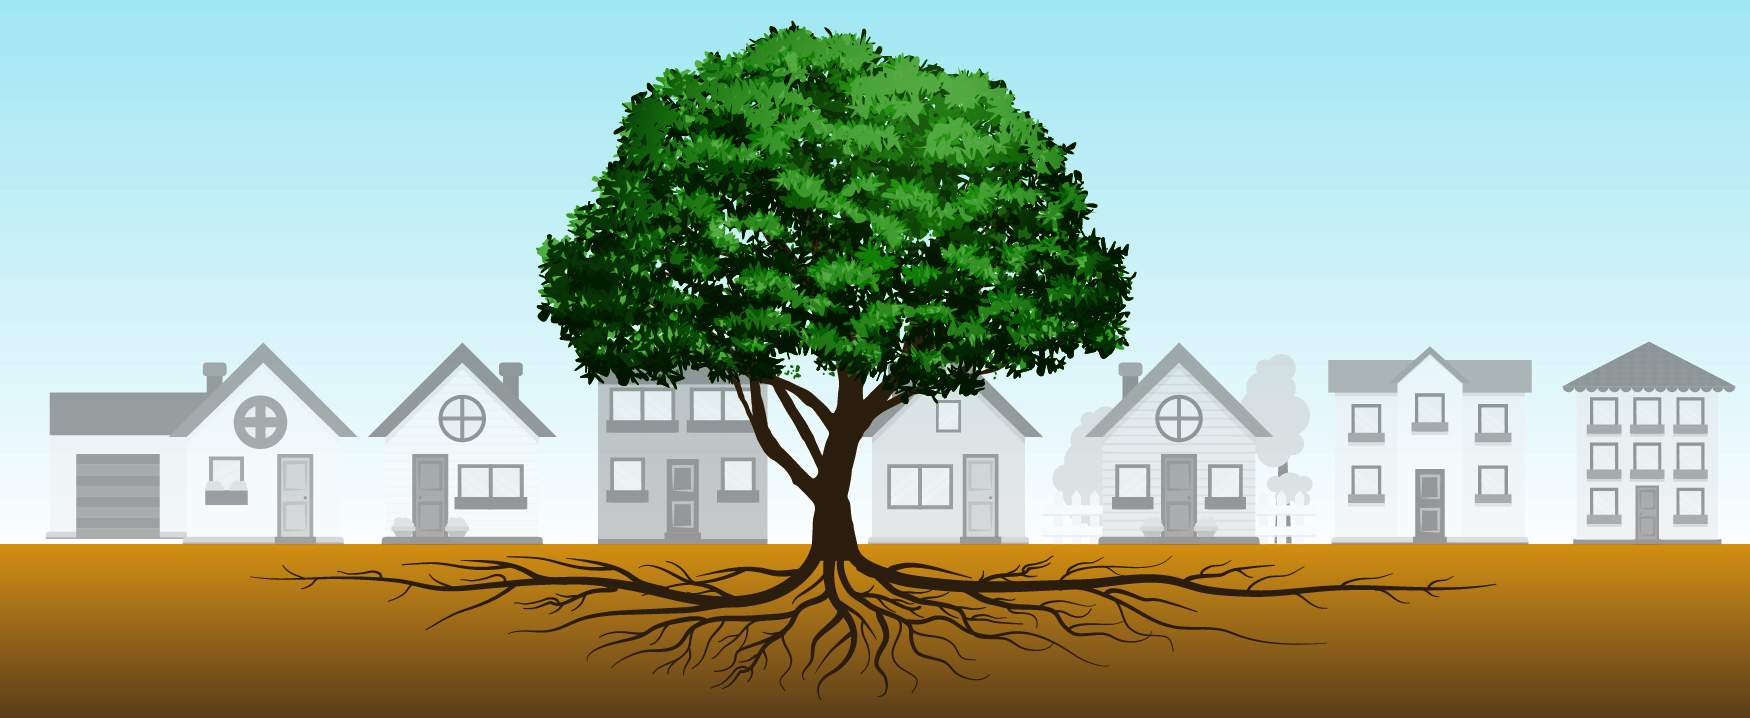 一棵树在一排房屋前面居中生长。 这棵树的根部散布在地下，使成排房屋的宽度向两个方向延伸。